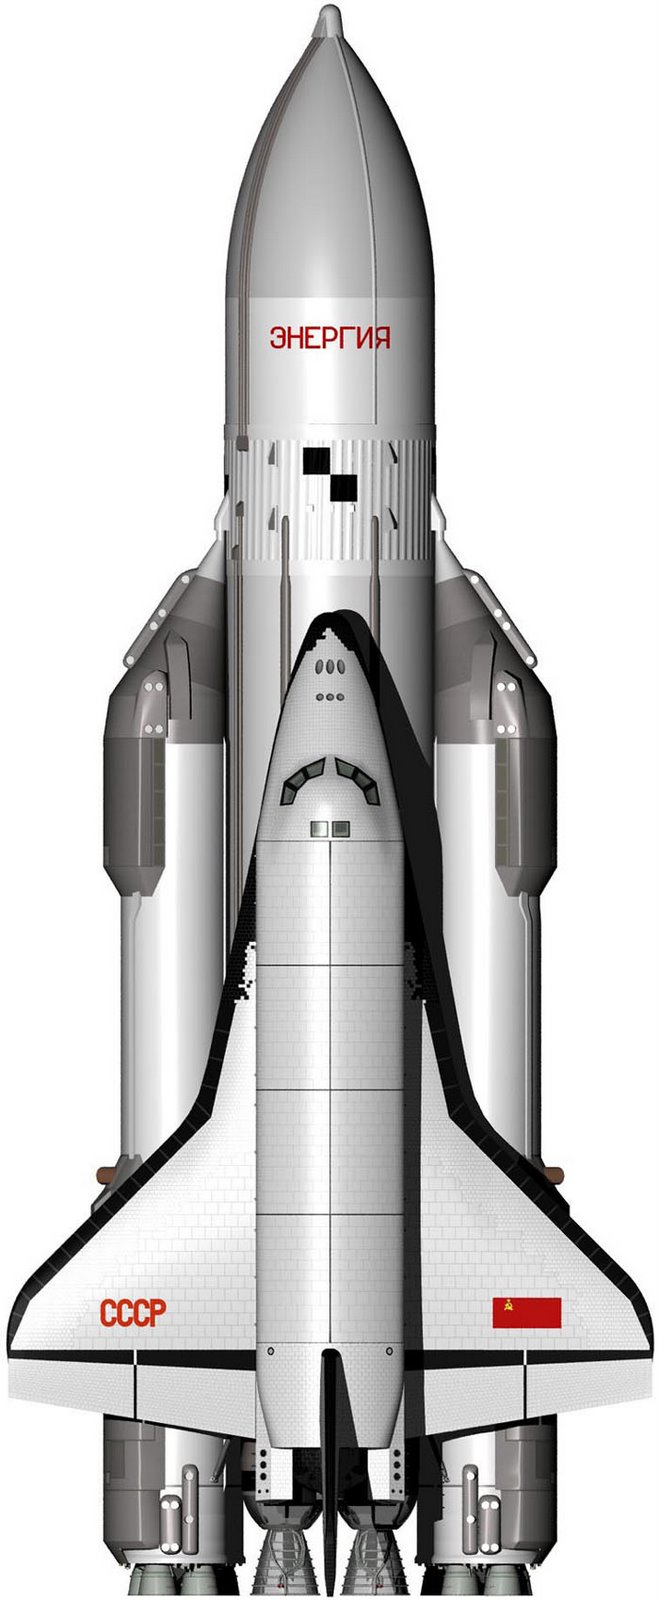 [Space_shuttle_USSR.jpg]